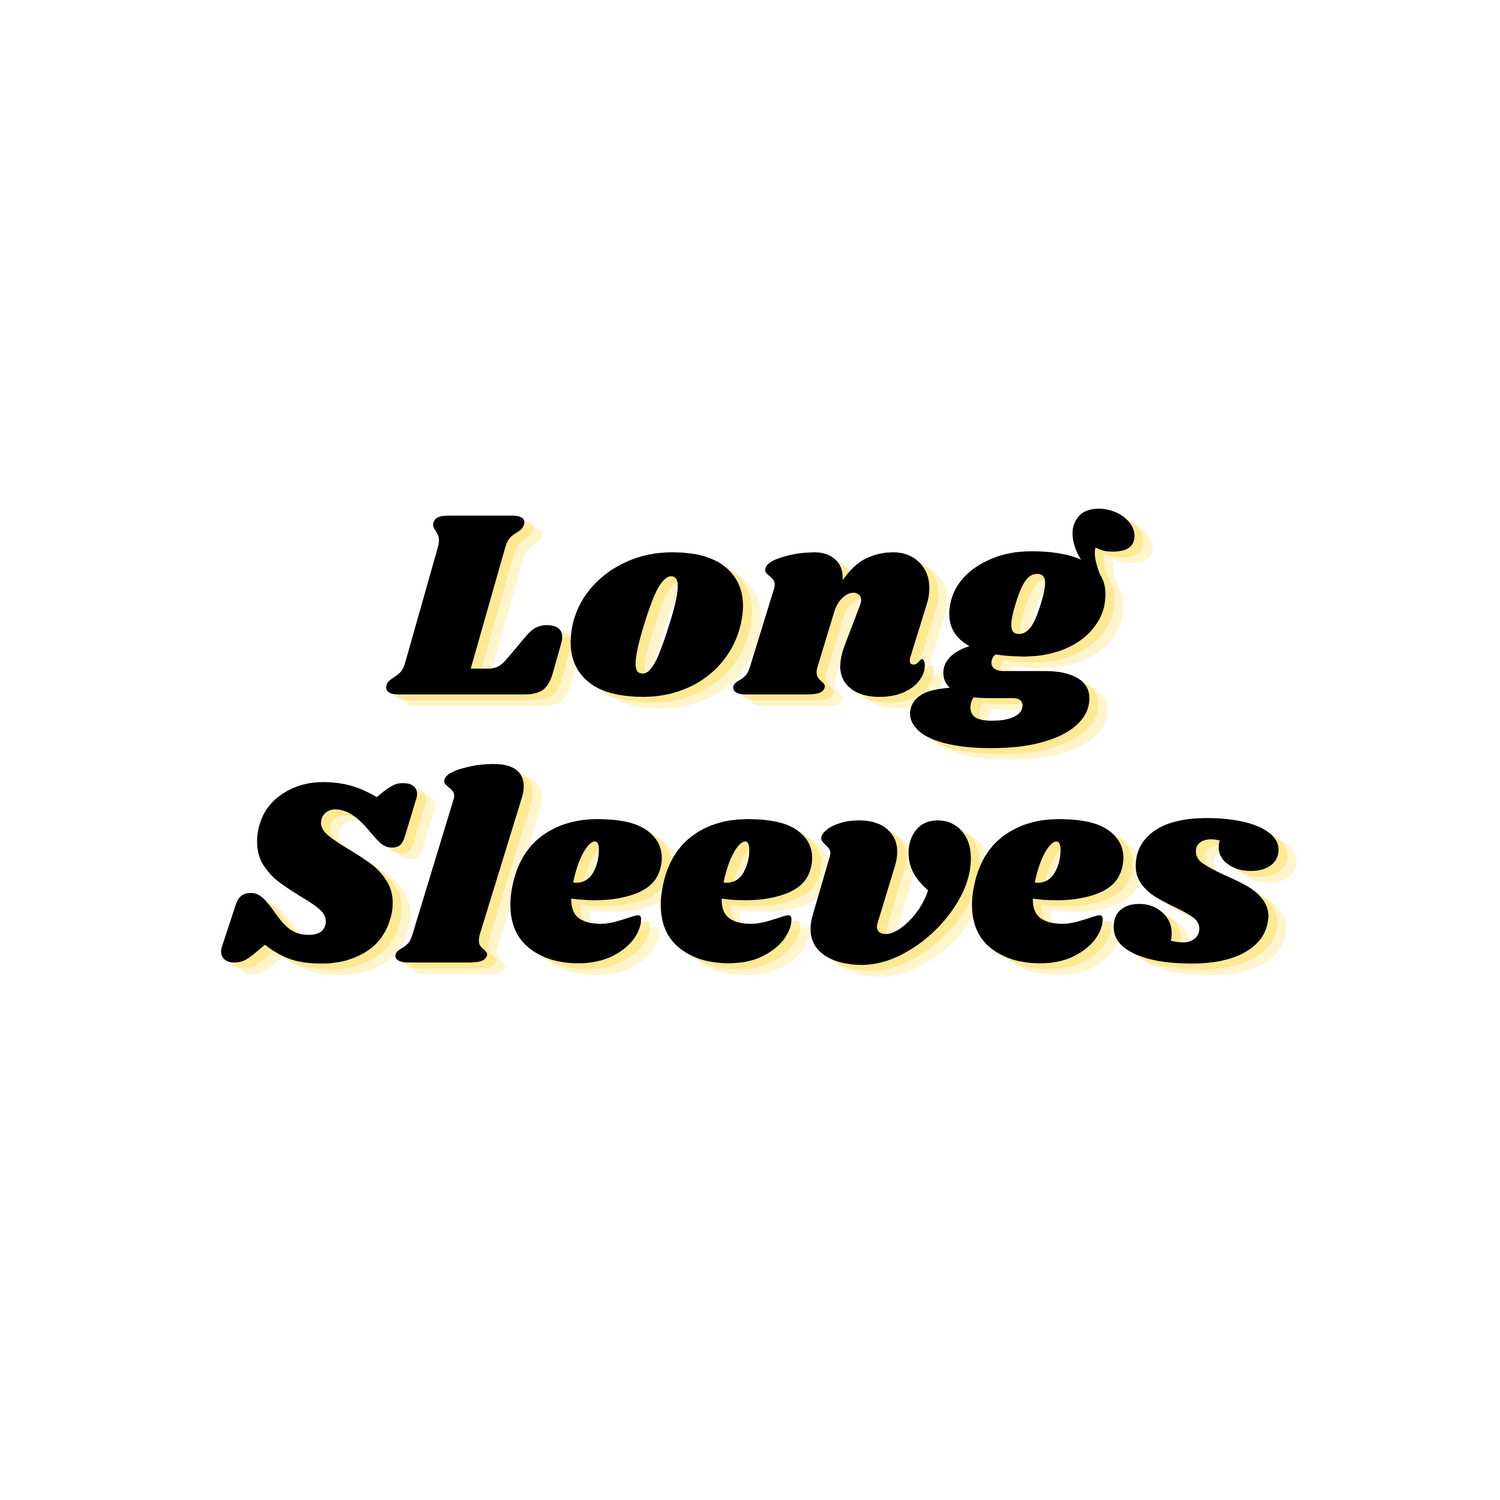 Long Sleeves